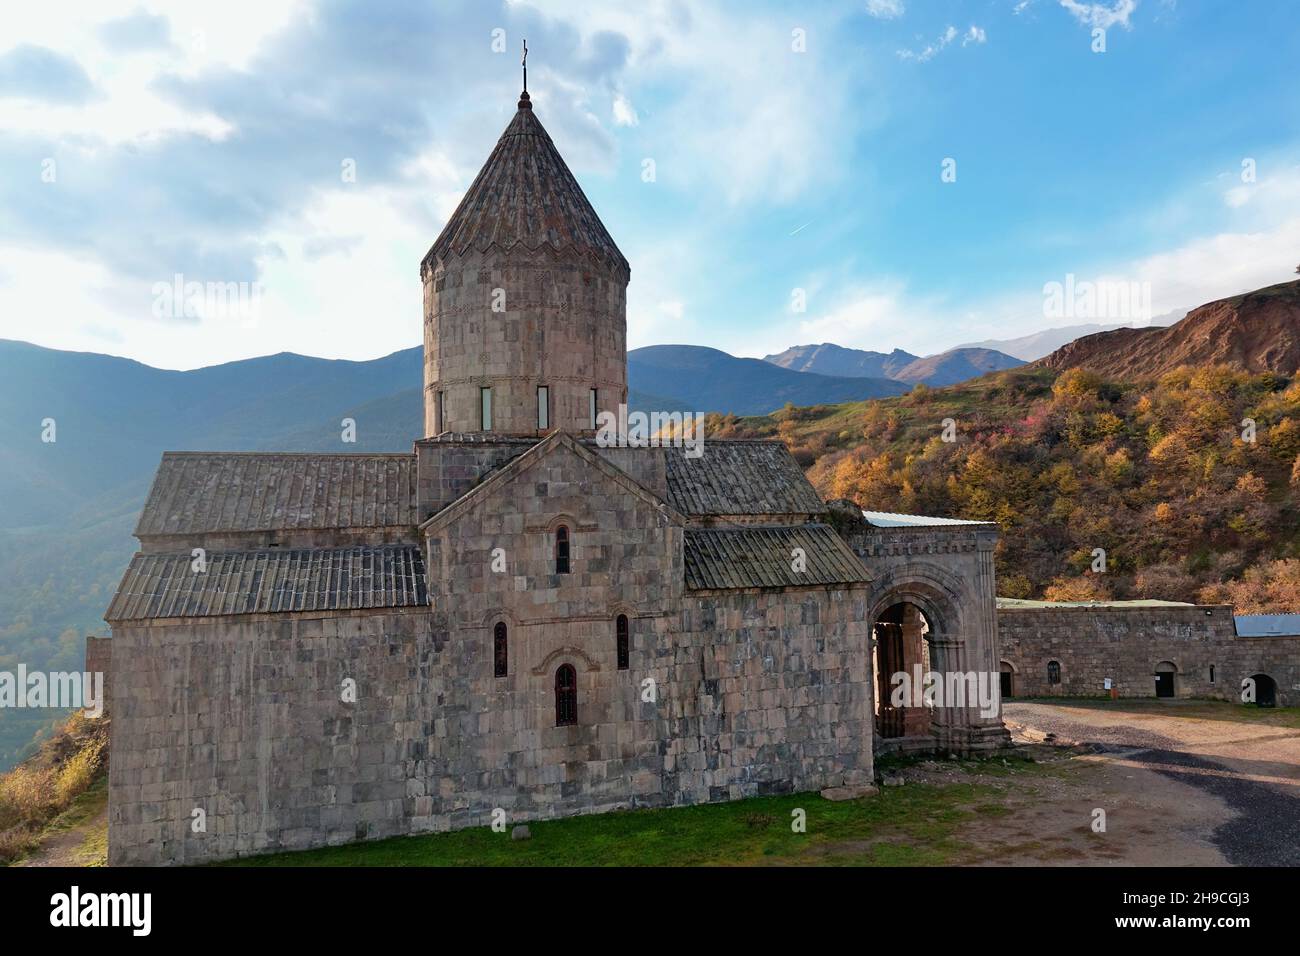 Principale église du monastère de Tatev le matin, un monastère apostolique arménien de 9th ans dans les montagnes nuageux, l'Arménie Banque D'Images